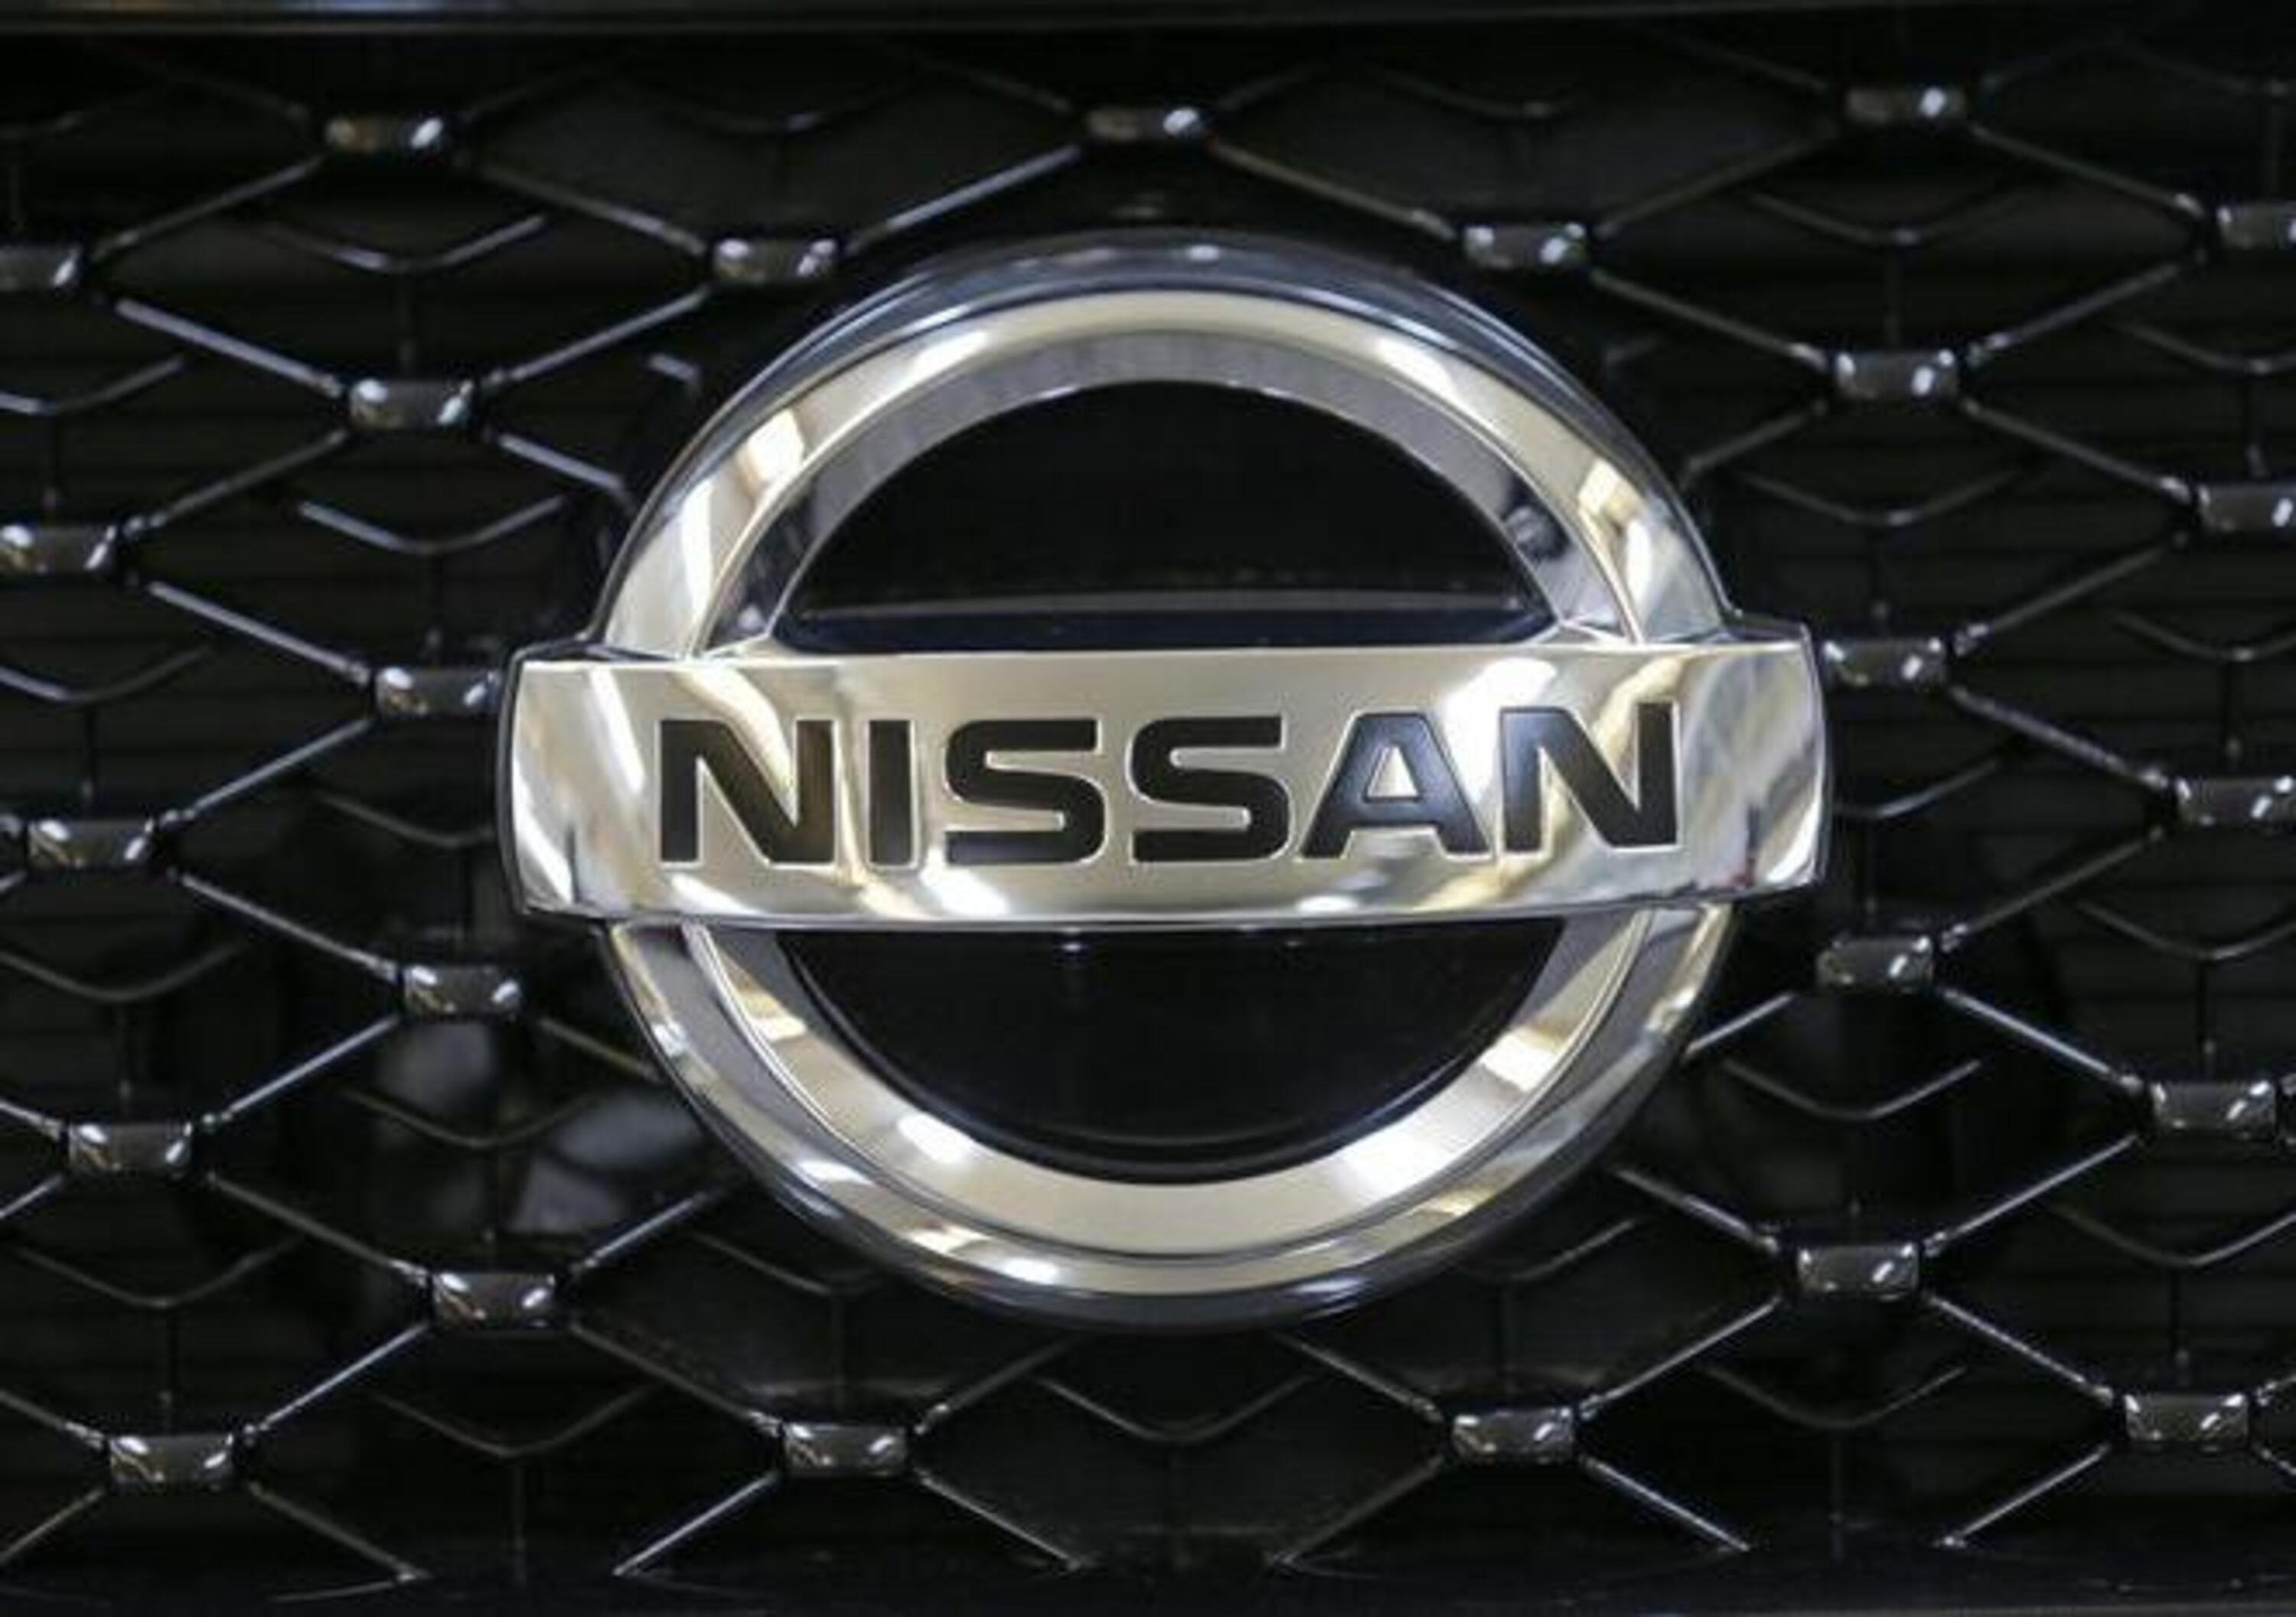 Nissan costruisce una Gigafactory nel Regno Unito?